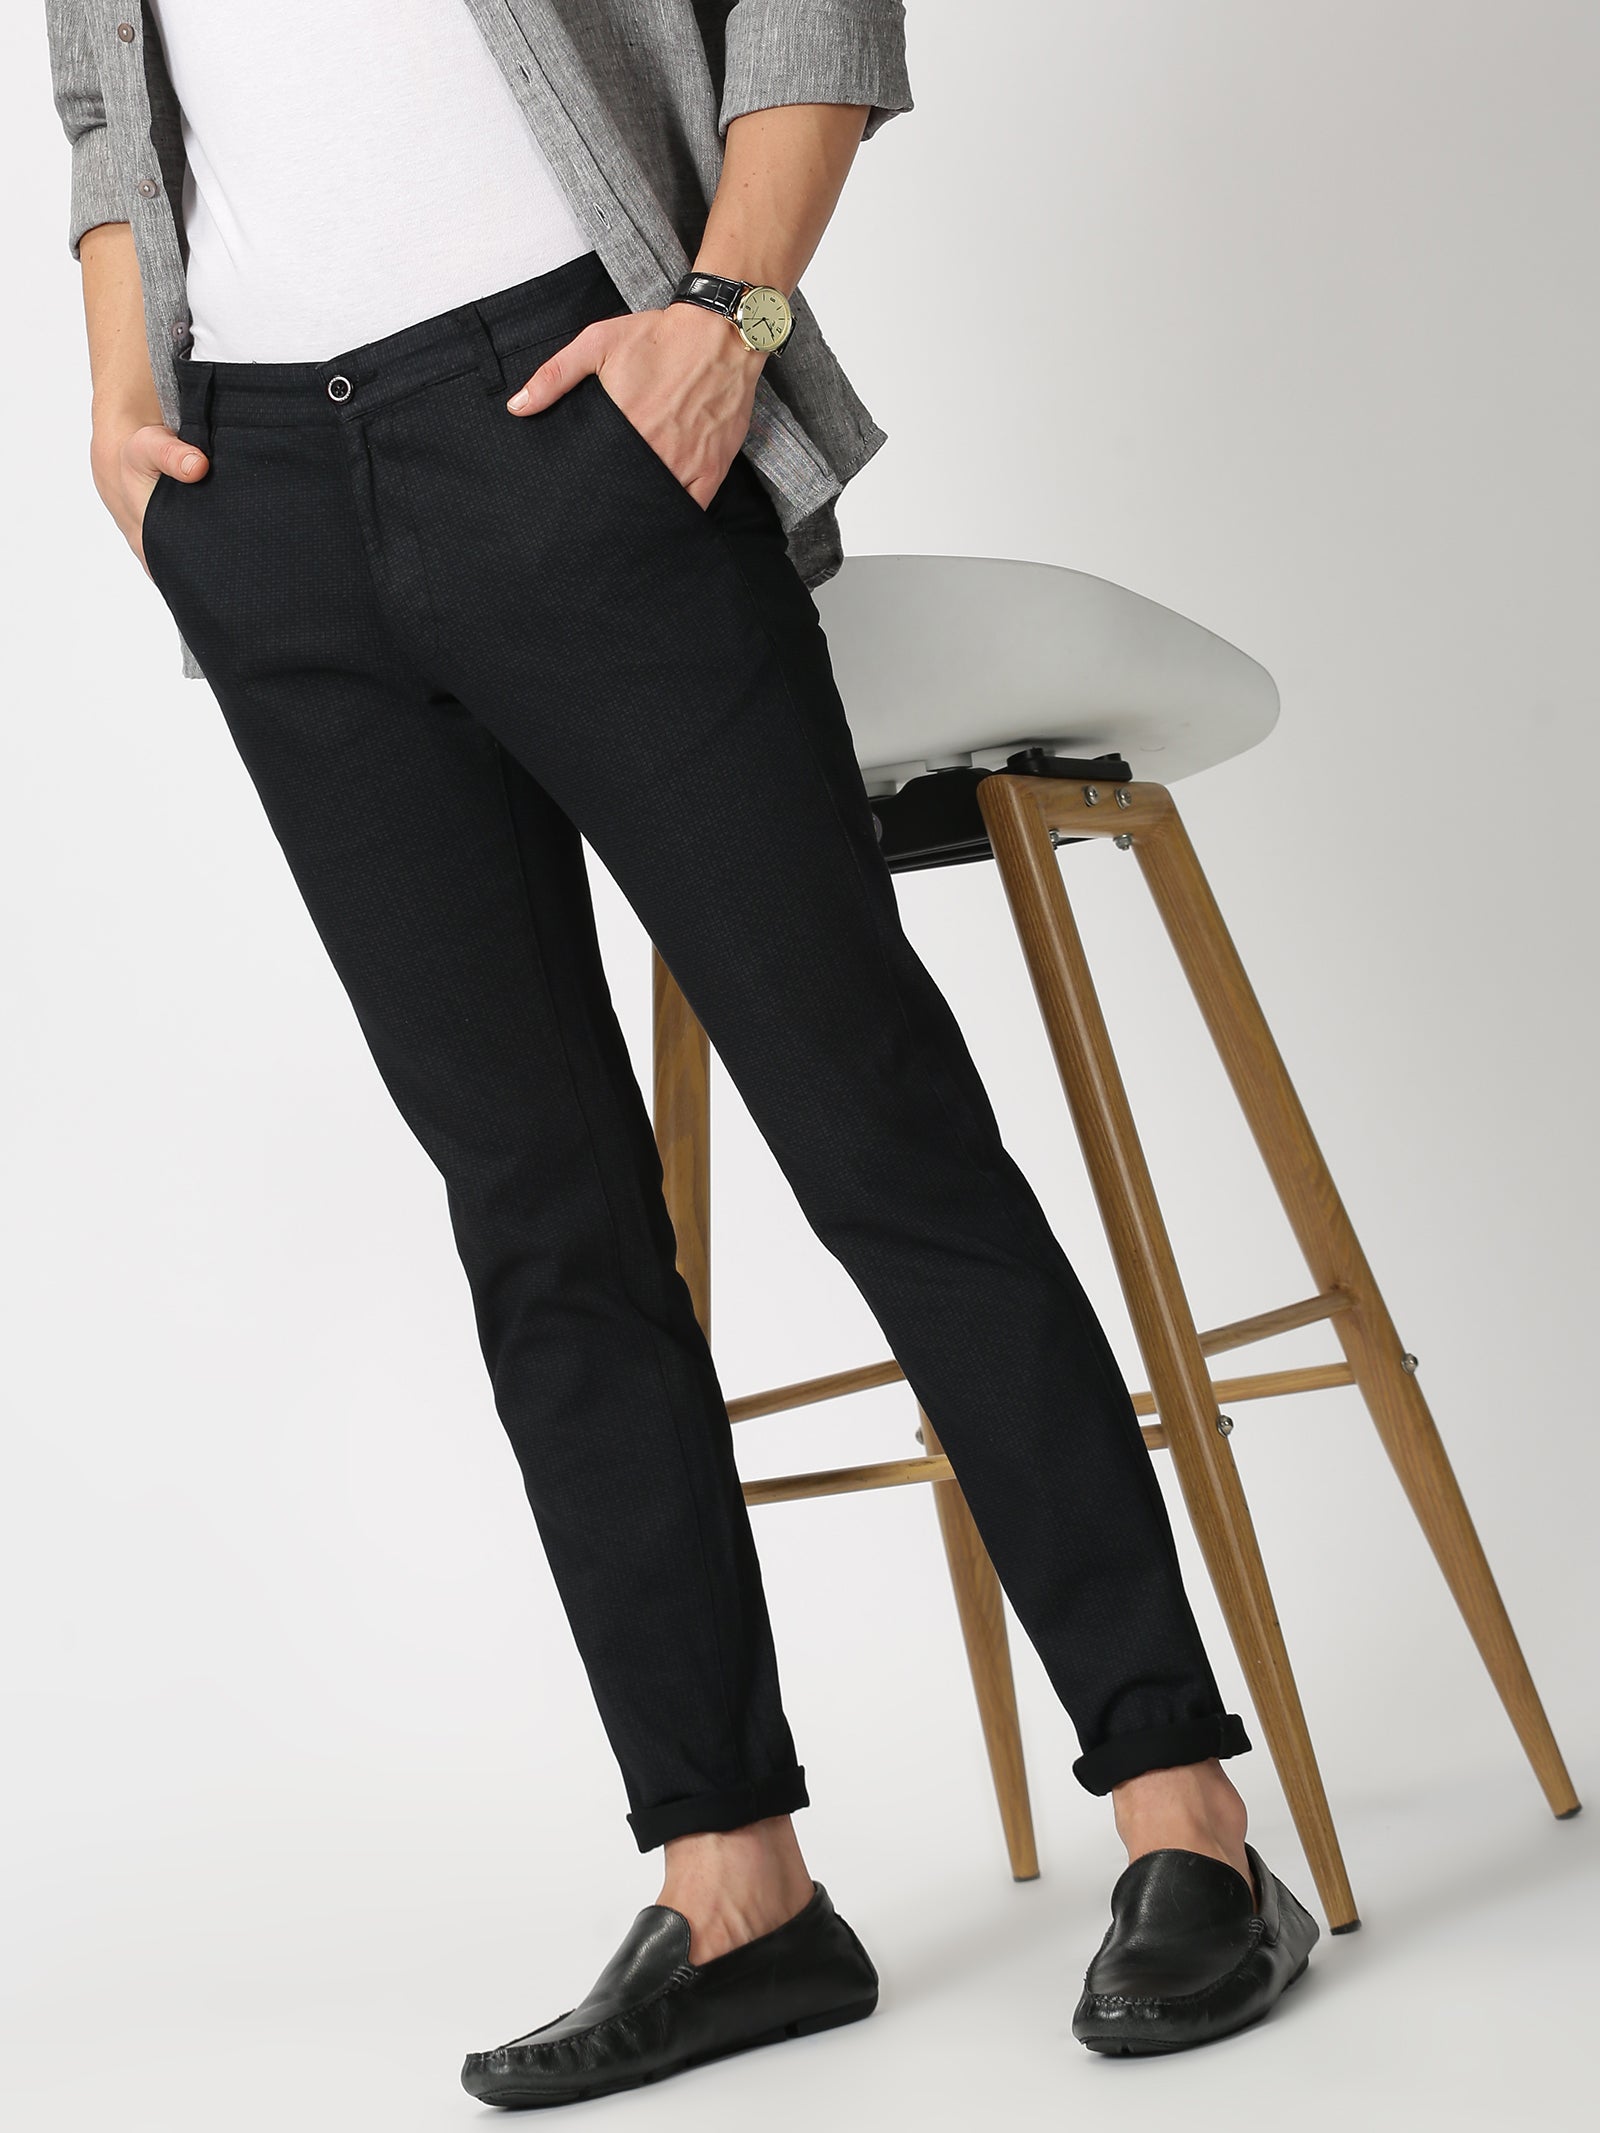 TechPro Formal Trousers In Black B91 Lite